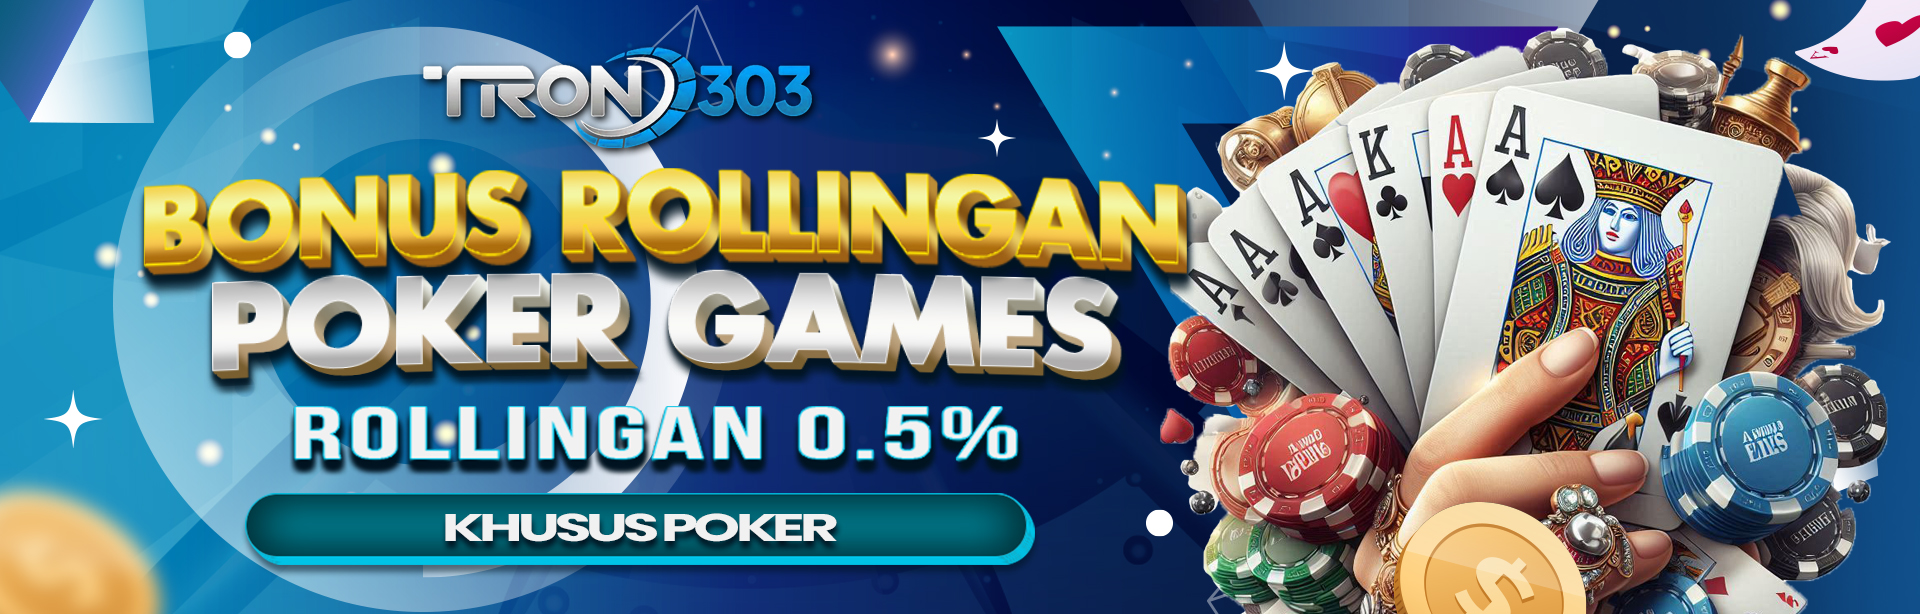 BONUS ROLLINGAN 0,5% POKER GAMES